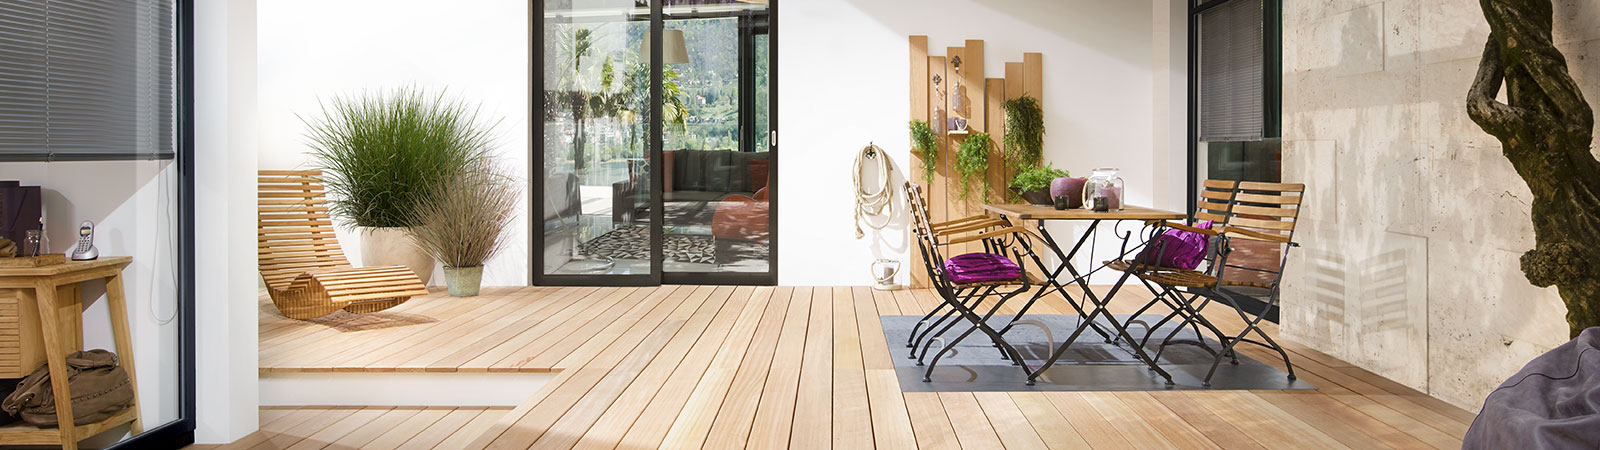 Moderne Terrassengestaltung mit Osmo Holzterrassendielen in Bangkirai glatt